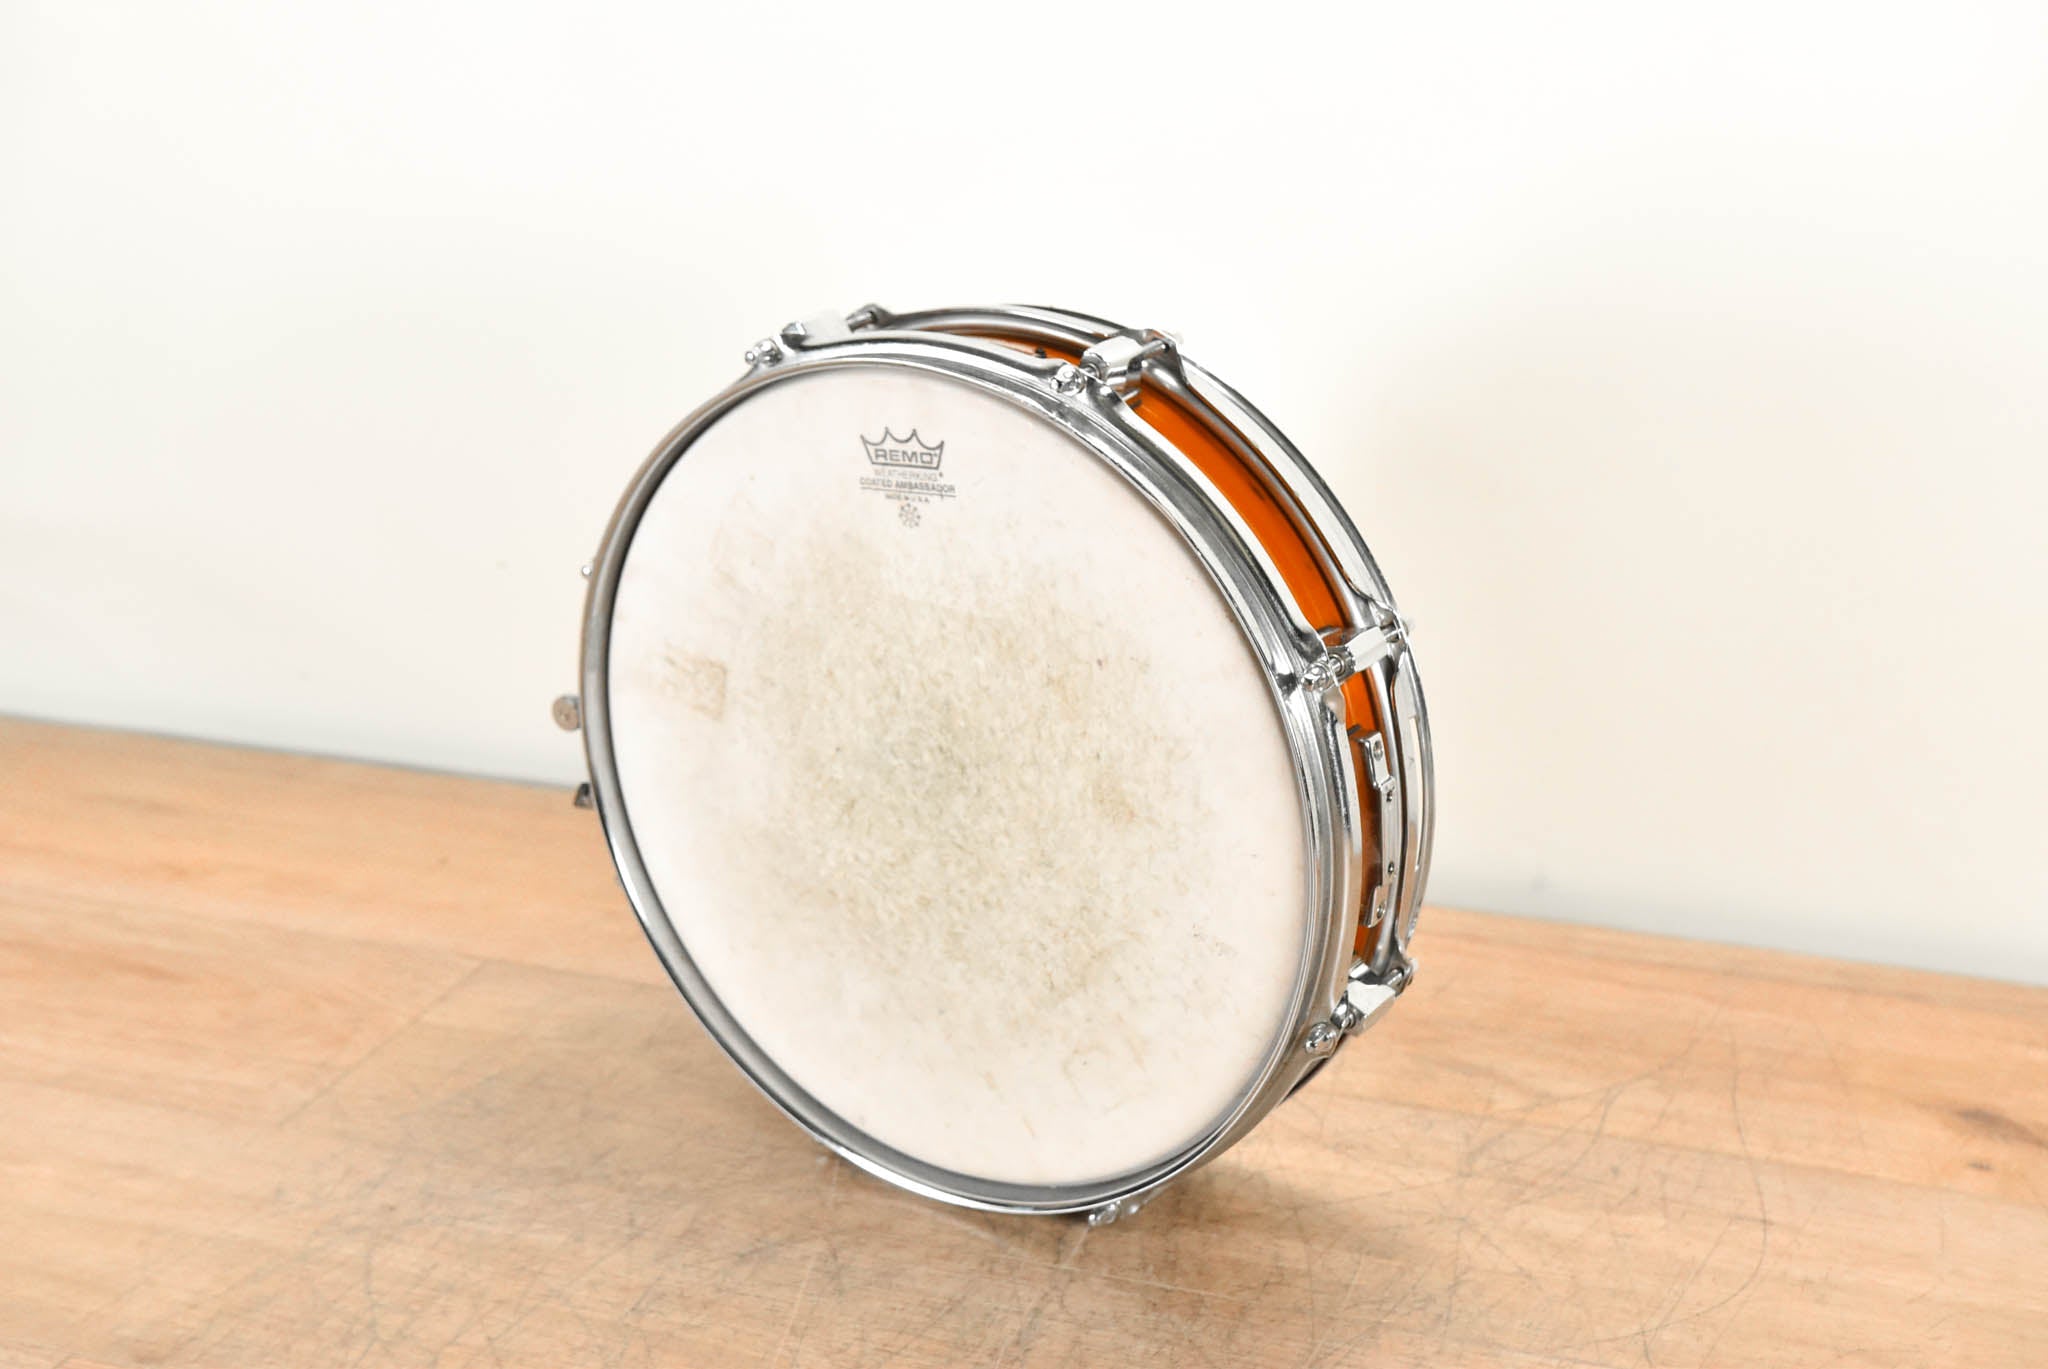 Pearl M-513P 13x3" Maple Piccolo Snare Drum